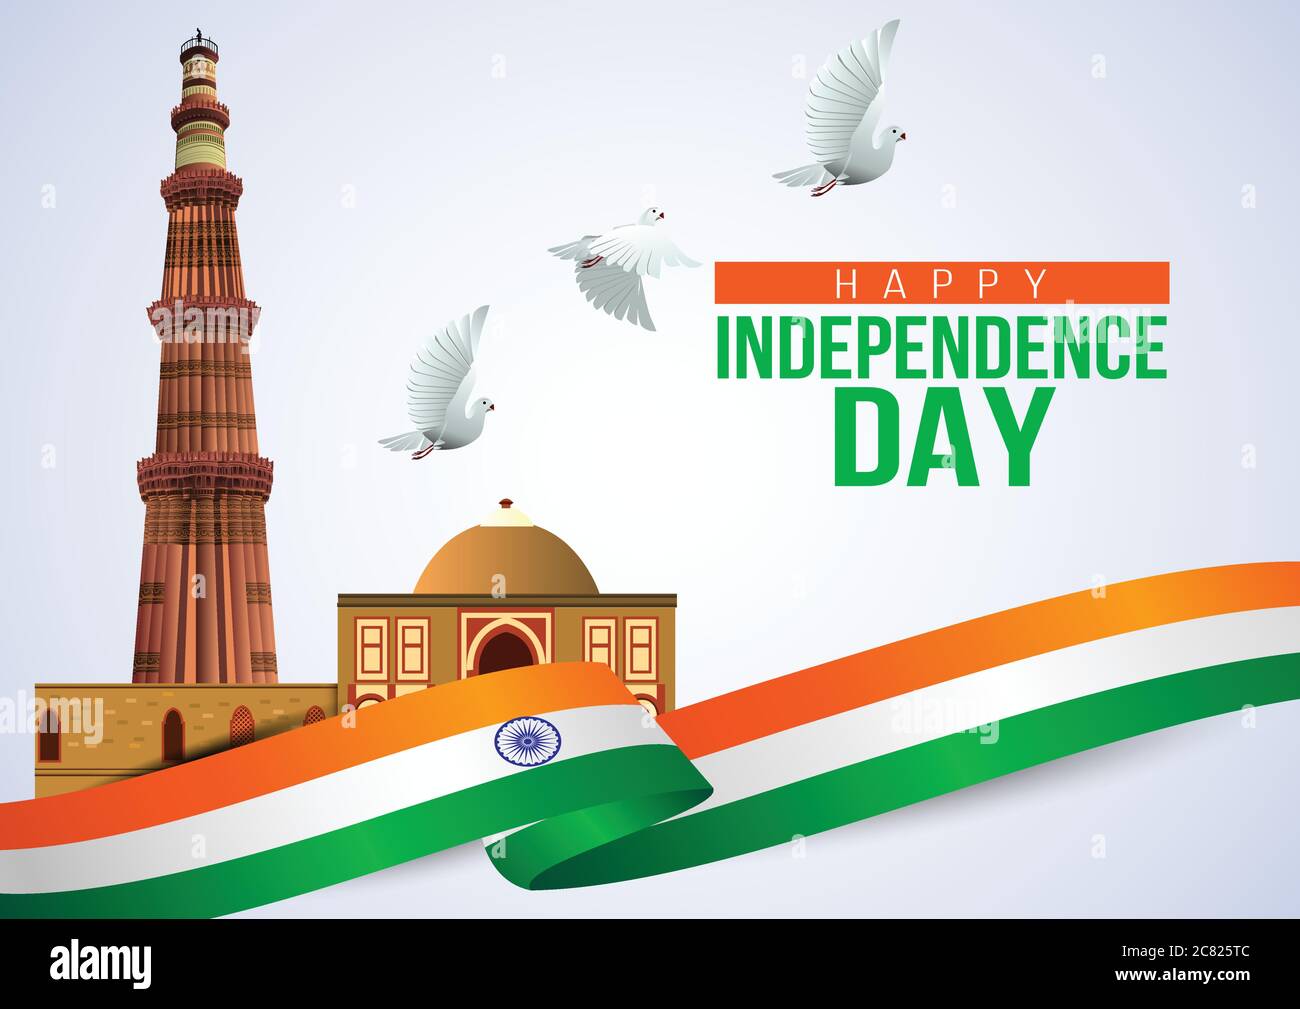 Happy Independence Day Celebration, 15 août, drapeau indien et monument Qutub Minar. Illustration vectorielle Illustration de Vecteur